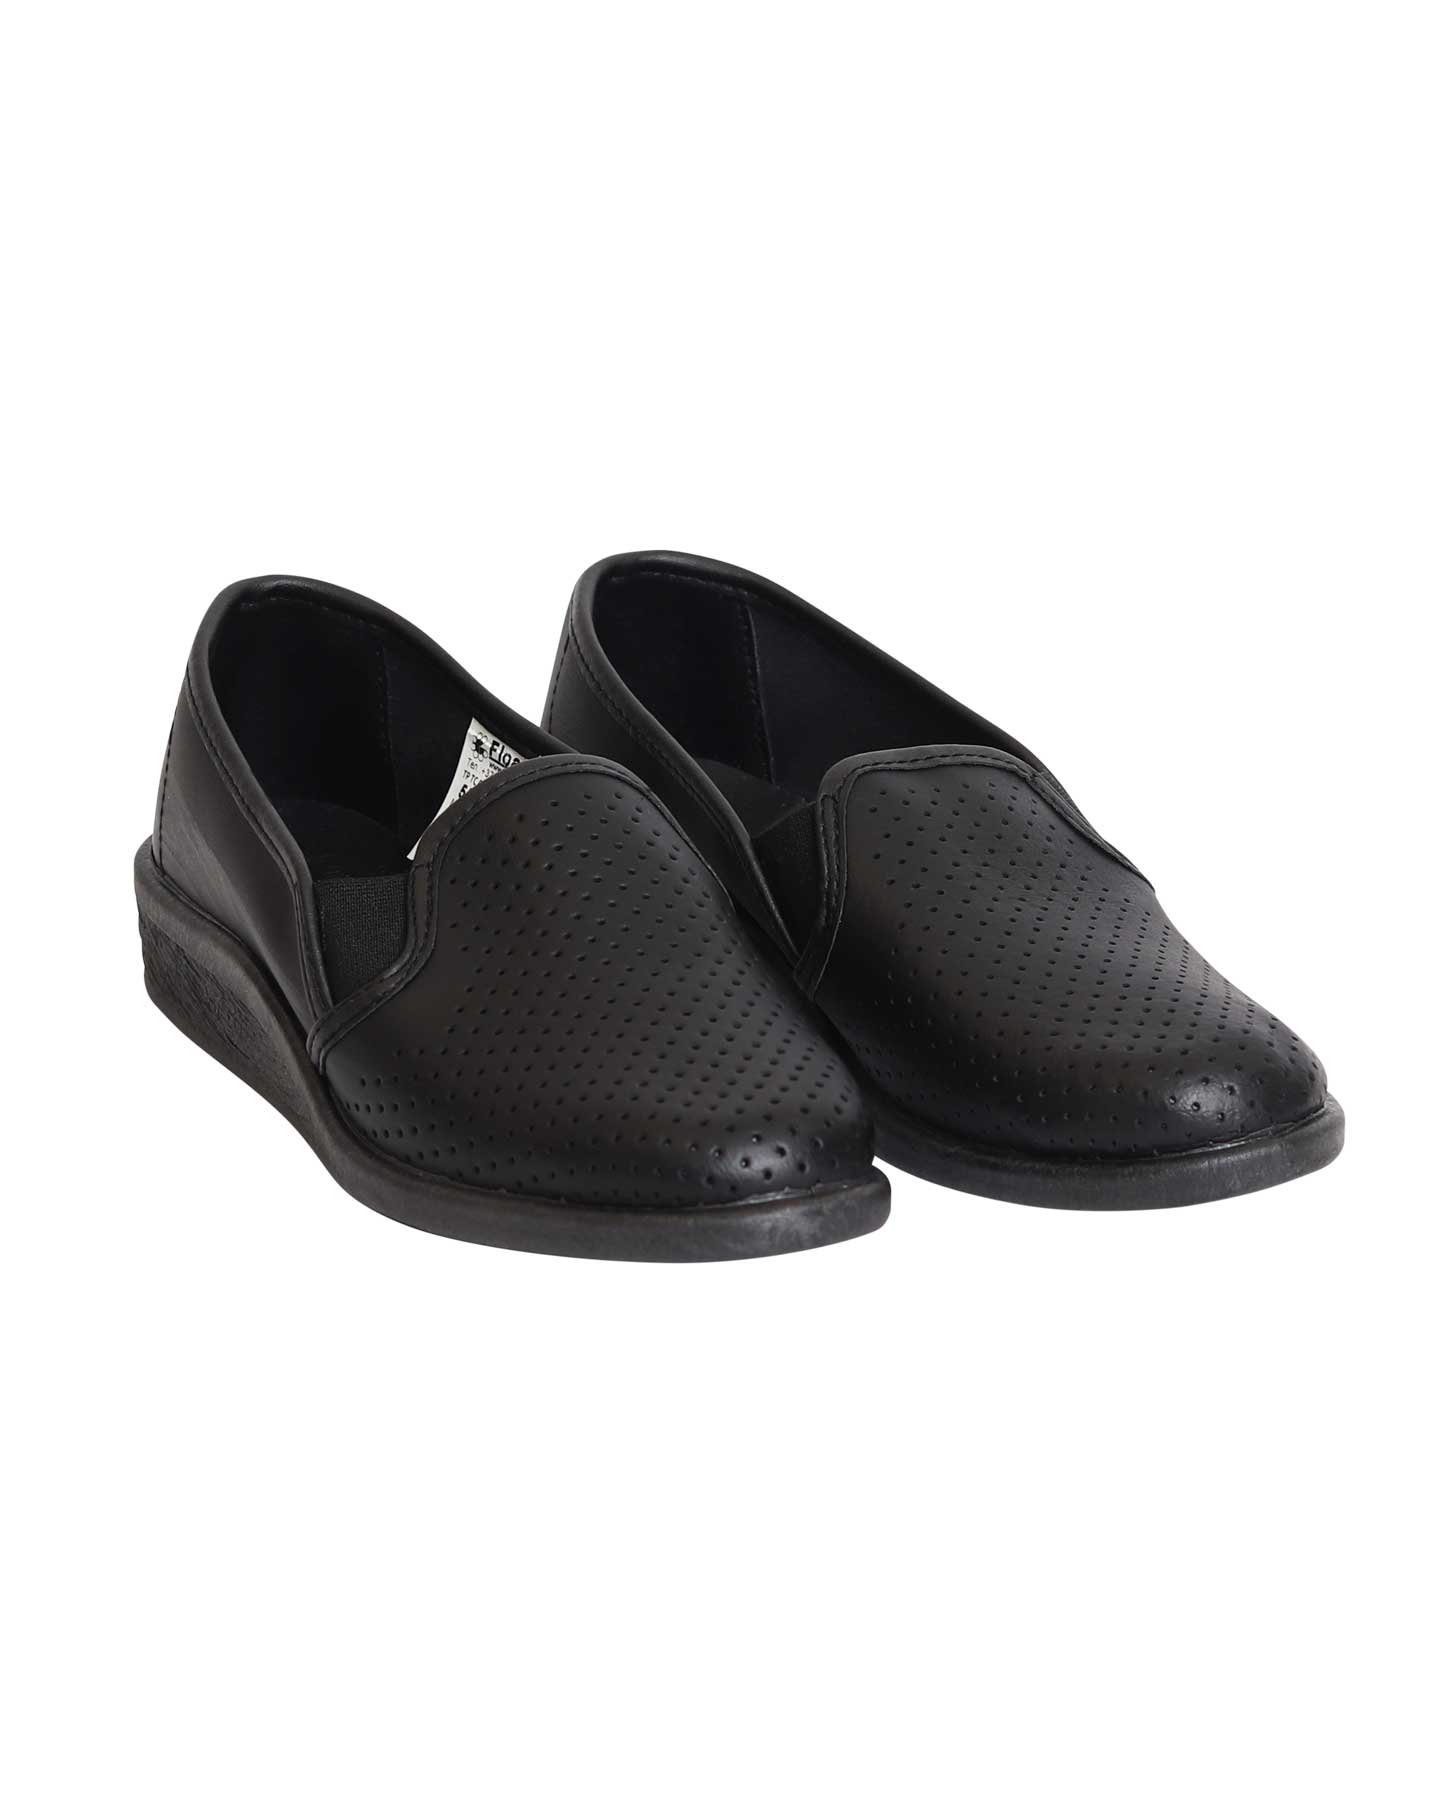 Туфли "МАТИЛЬДА" женские, мелкая перфорация, цвет: черный